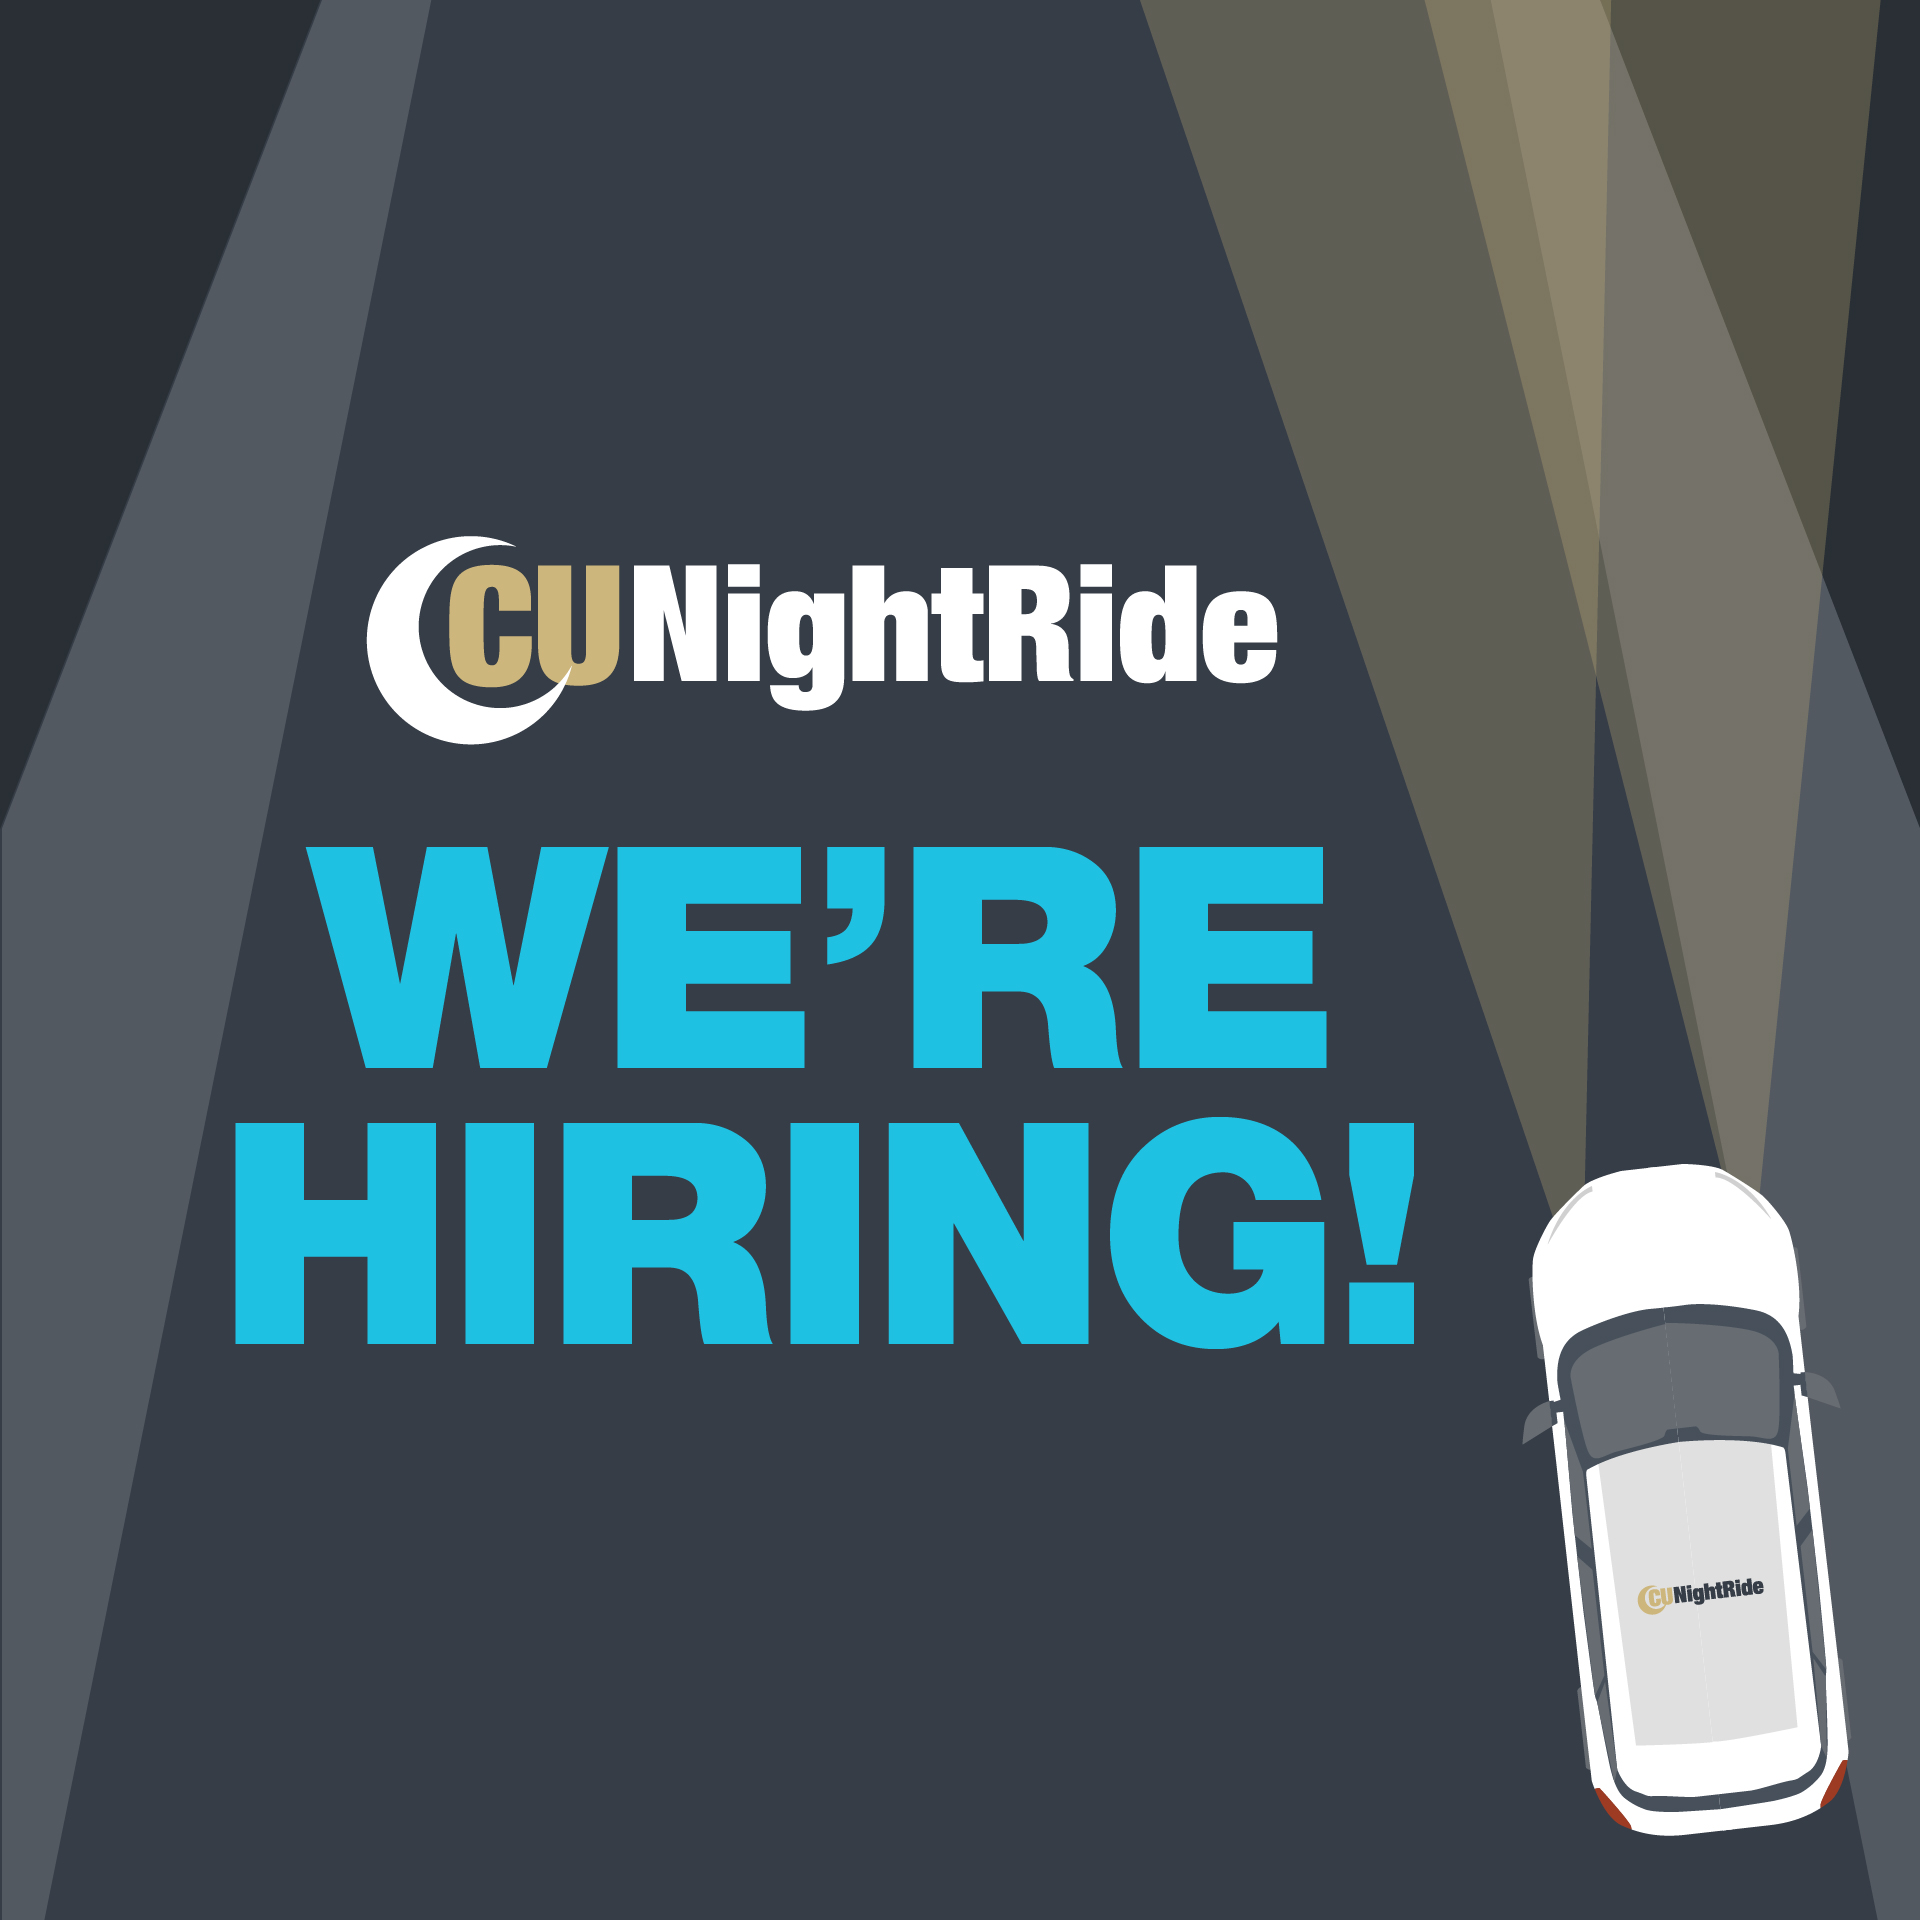 CU NightRide is hiring